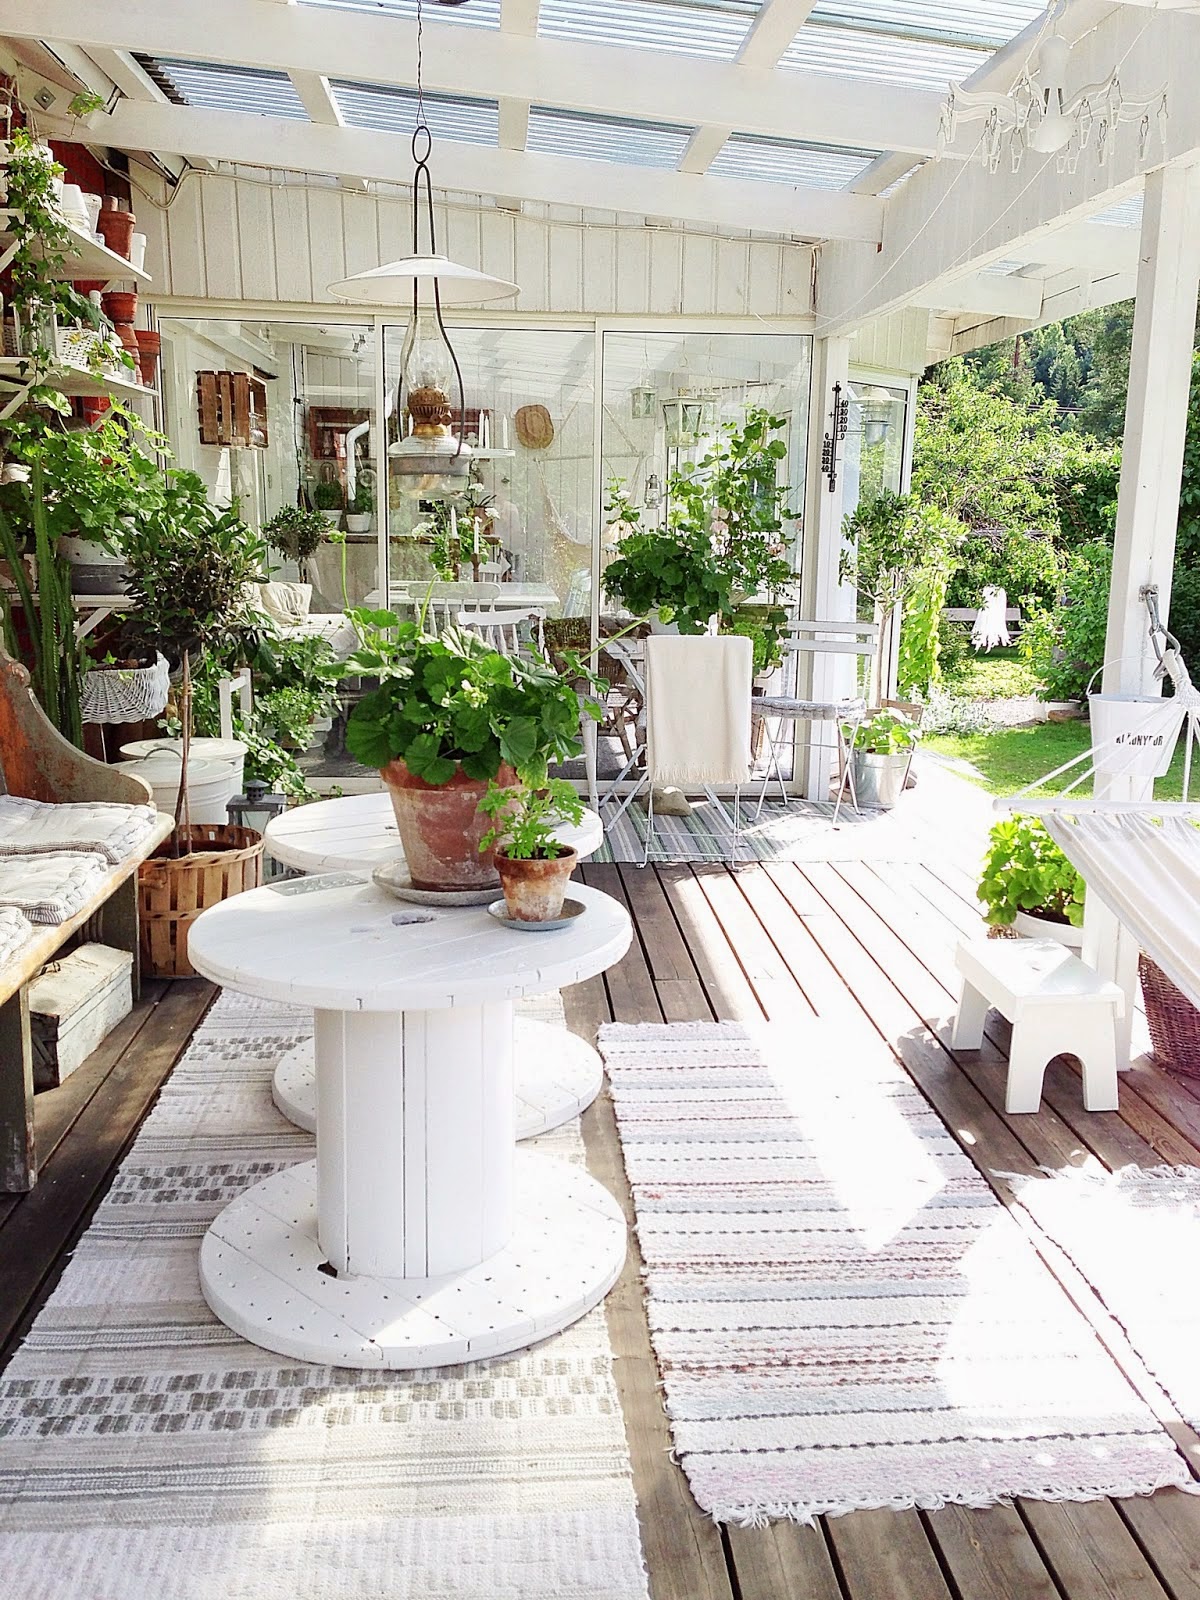 idée de décoration terrasse exterieur avec banc en bois brut et tables en touret blancs, touret bois deco avec beaucoup de plantes vertes